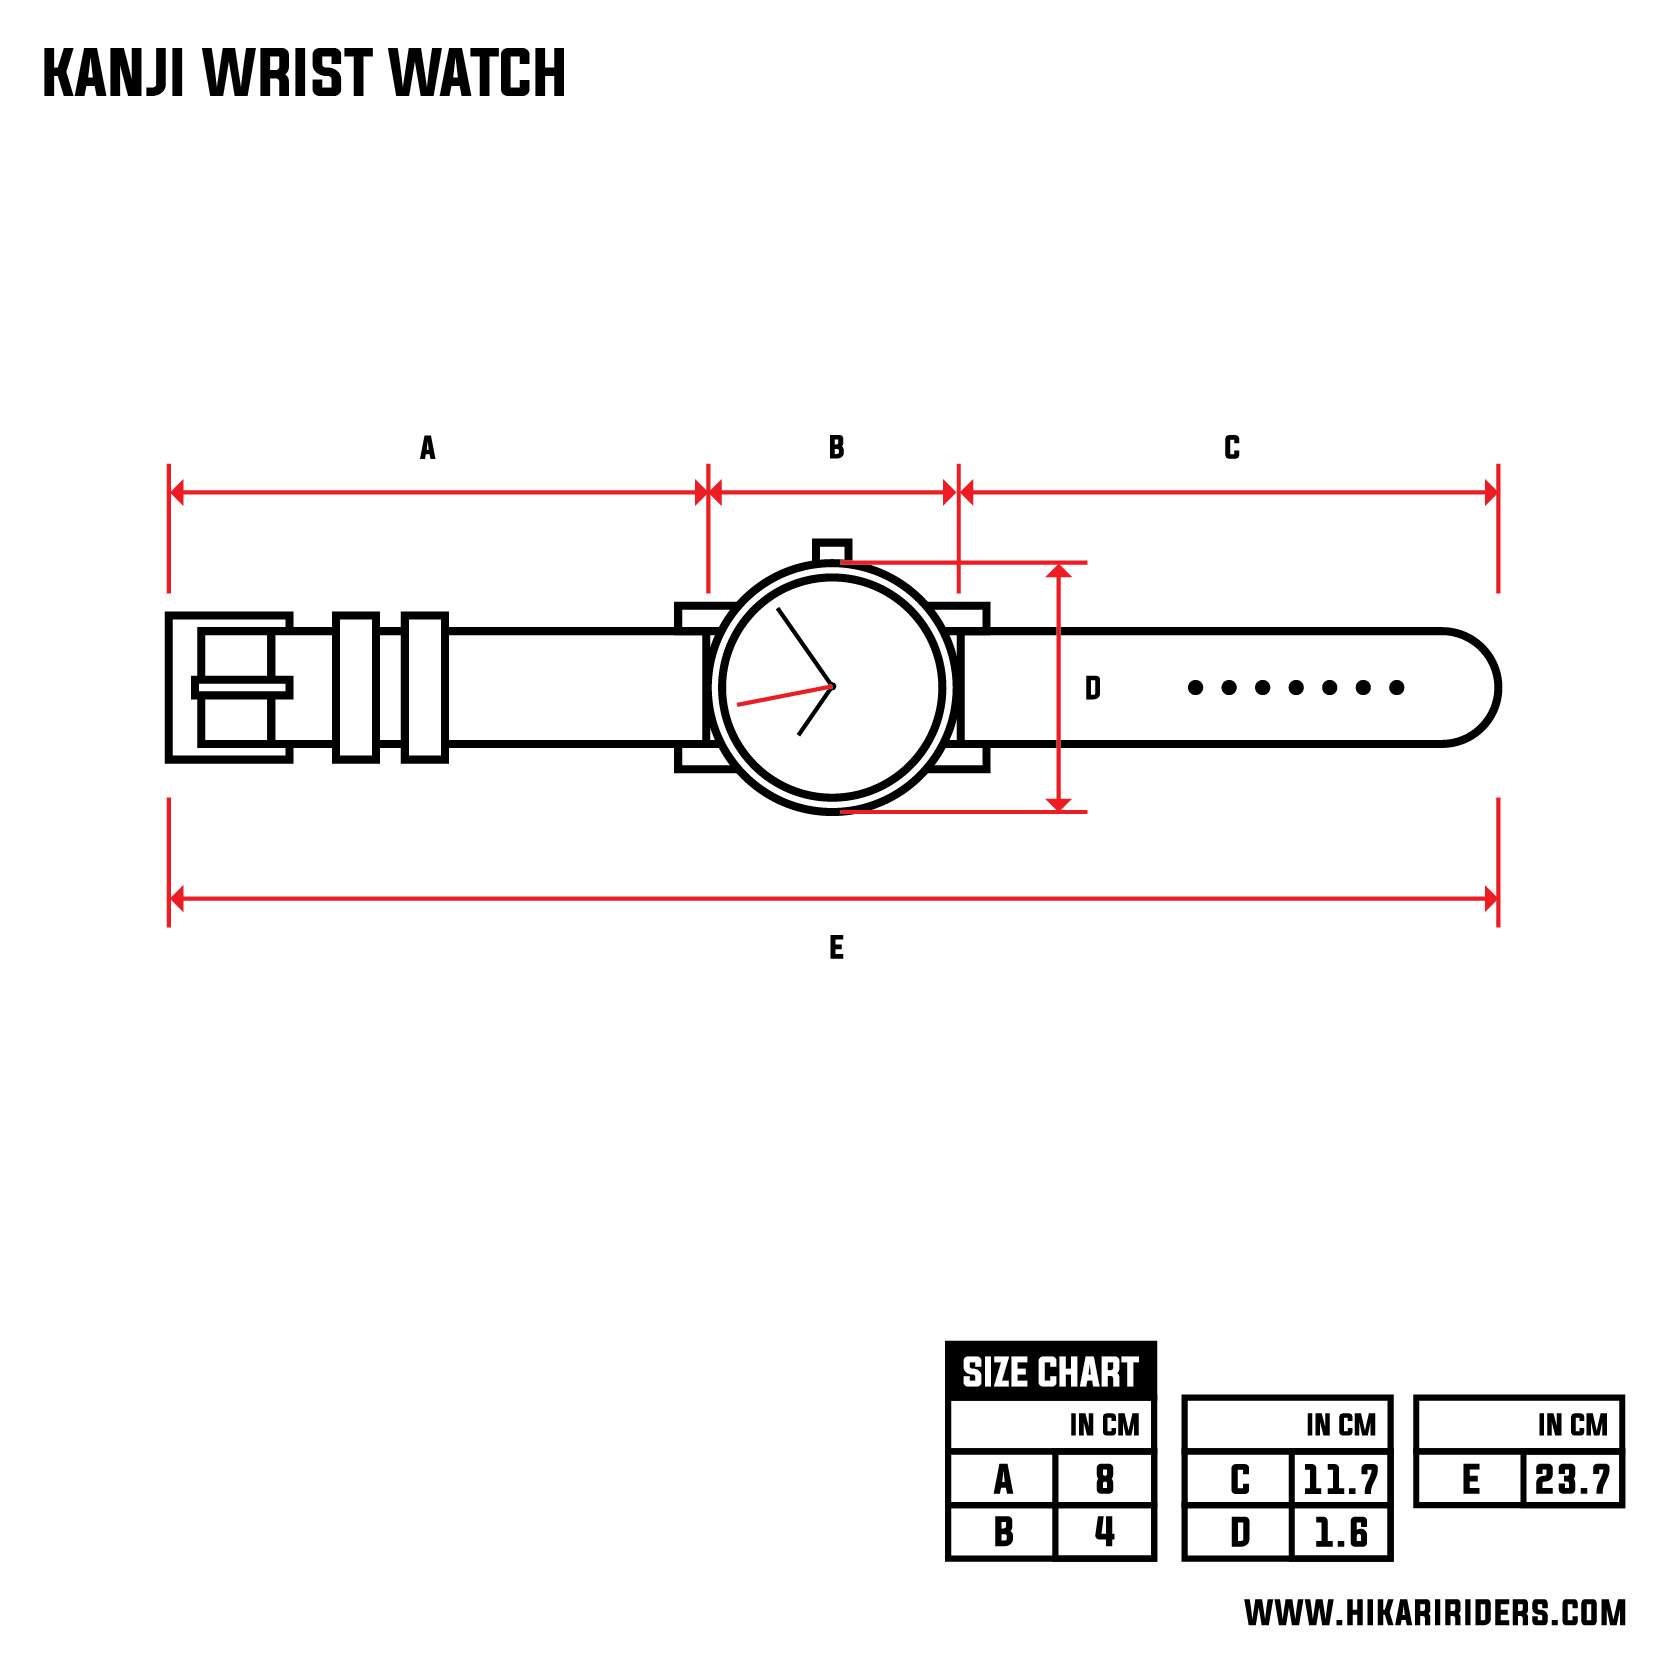 Kanji Wrist Watch.jpg